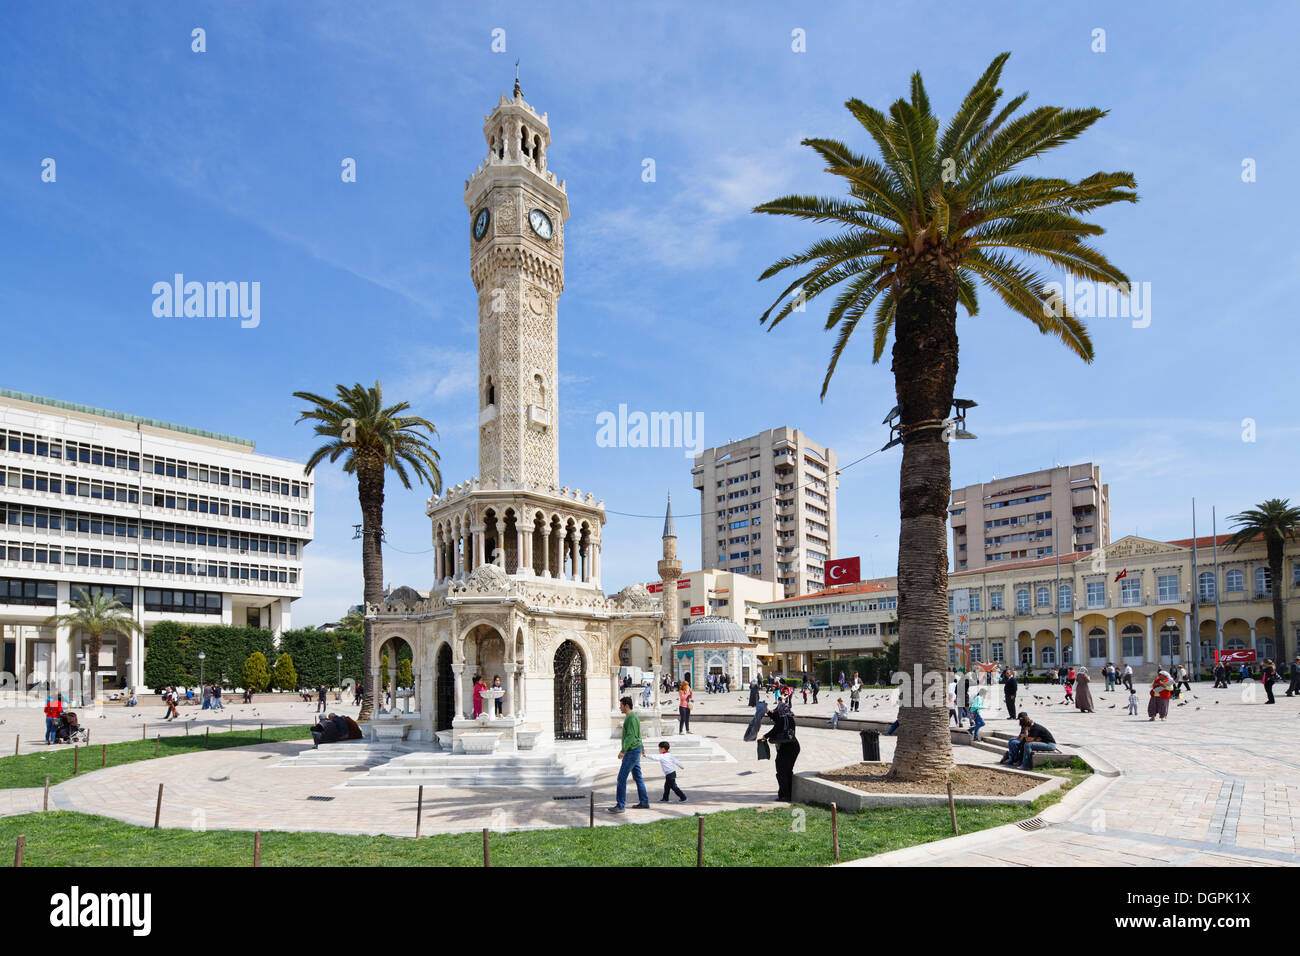 Uhrturm Saat Kulesi und Konak Moschee am Konak Meydani quadratisch, Konak, Izmir, İzmir Provinz, Ägäis, Türkei Stockfoto